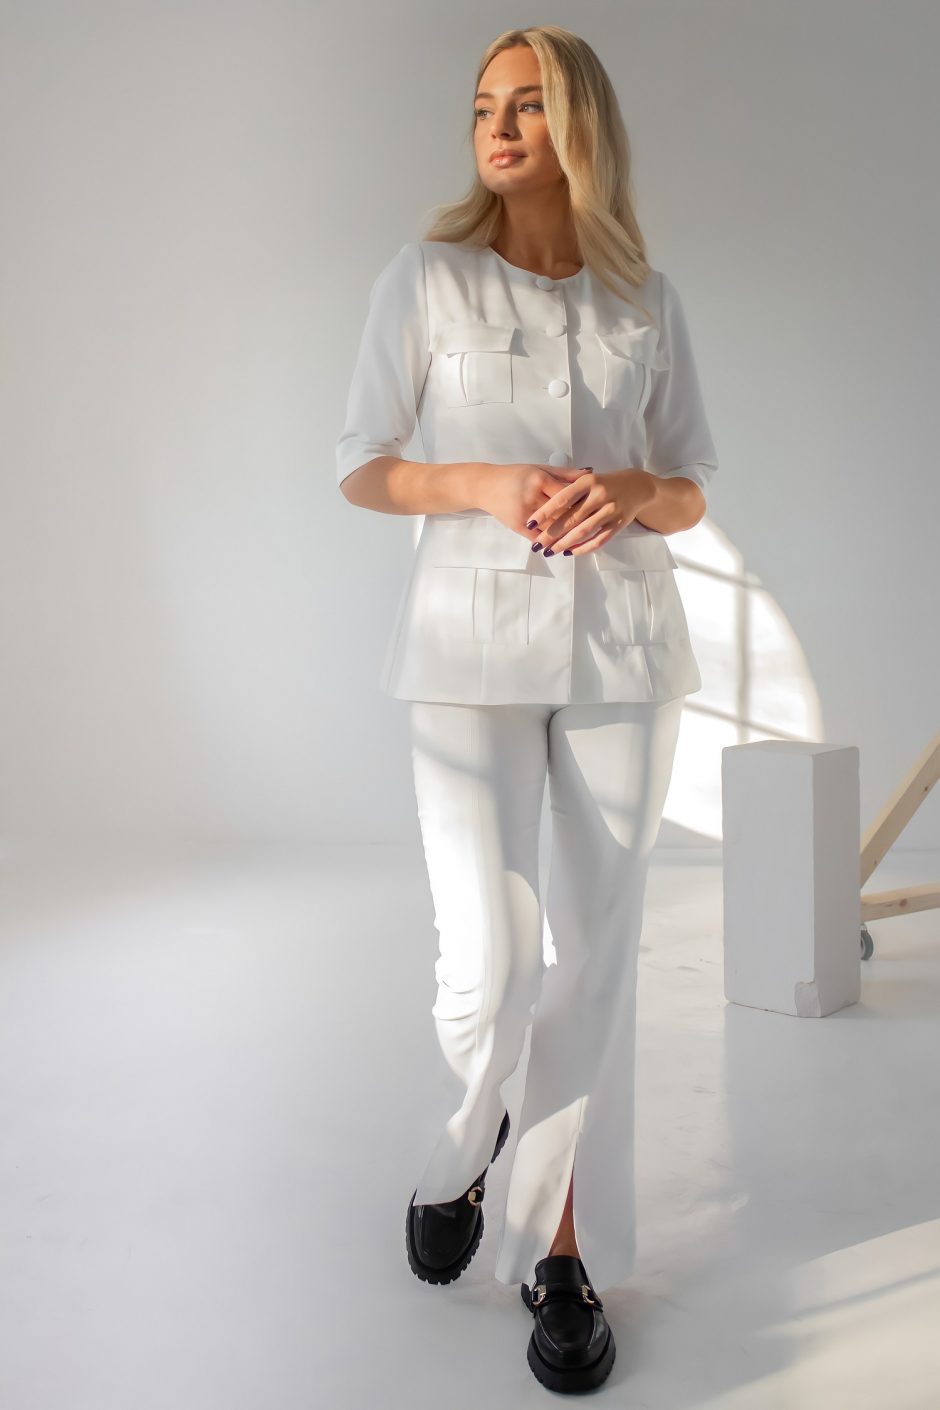 Drabužių dizainerė griauna stereotipus: baltų chalatų profesijos žmonės gali atrodyti stilingai!